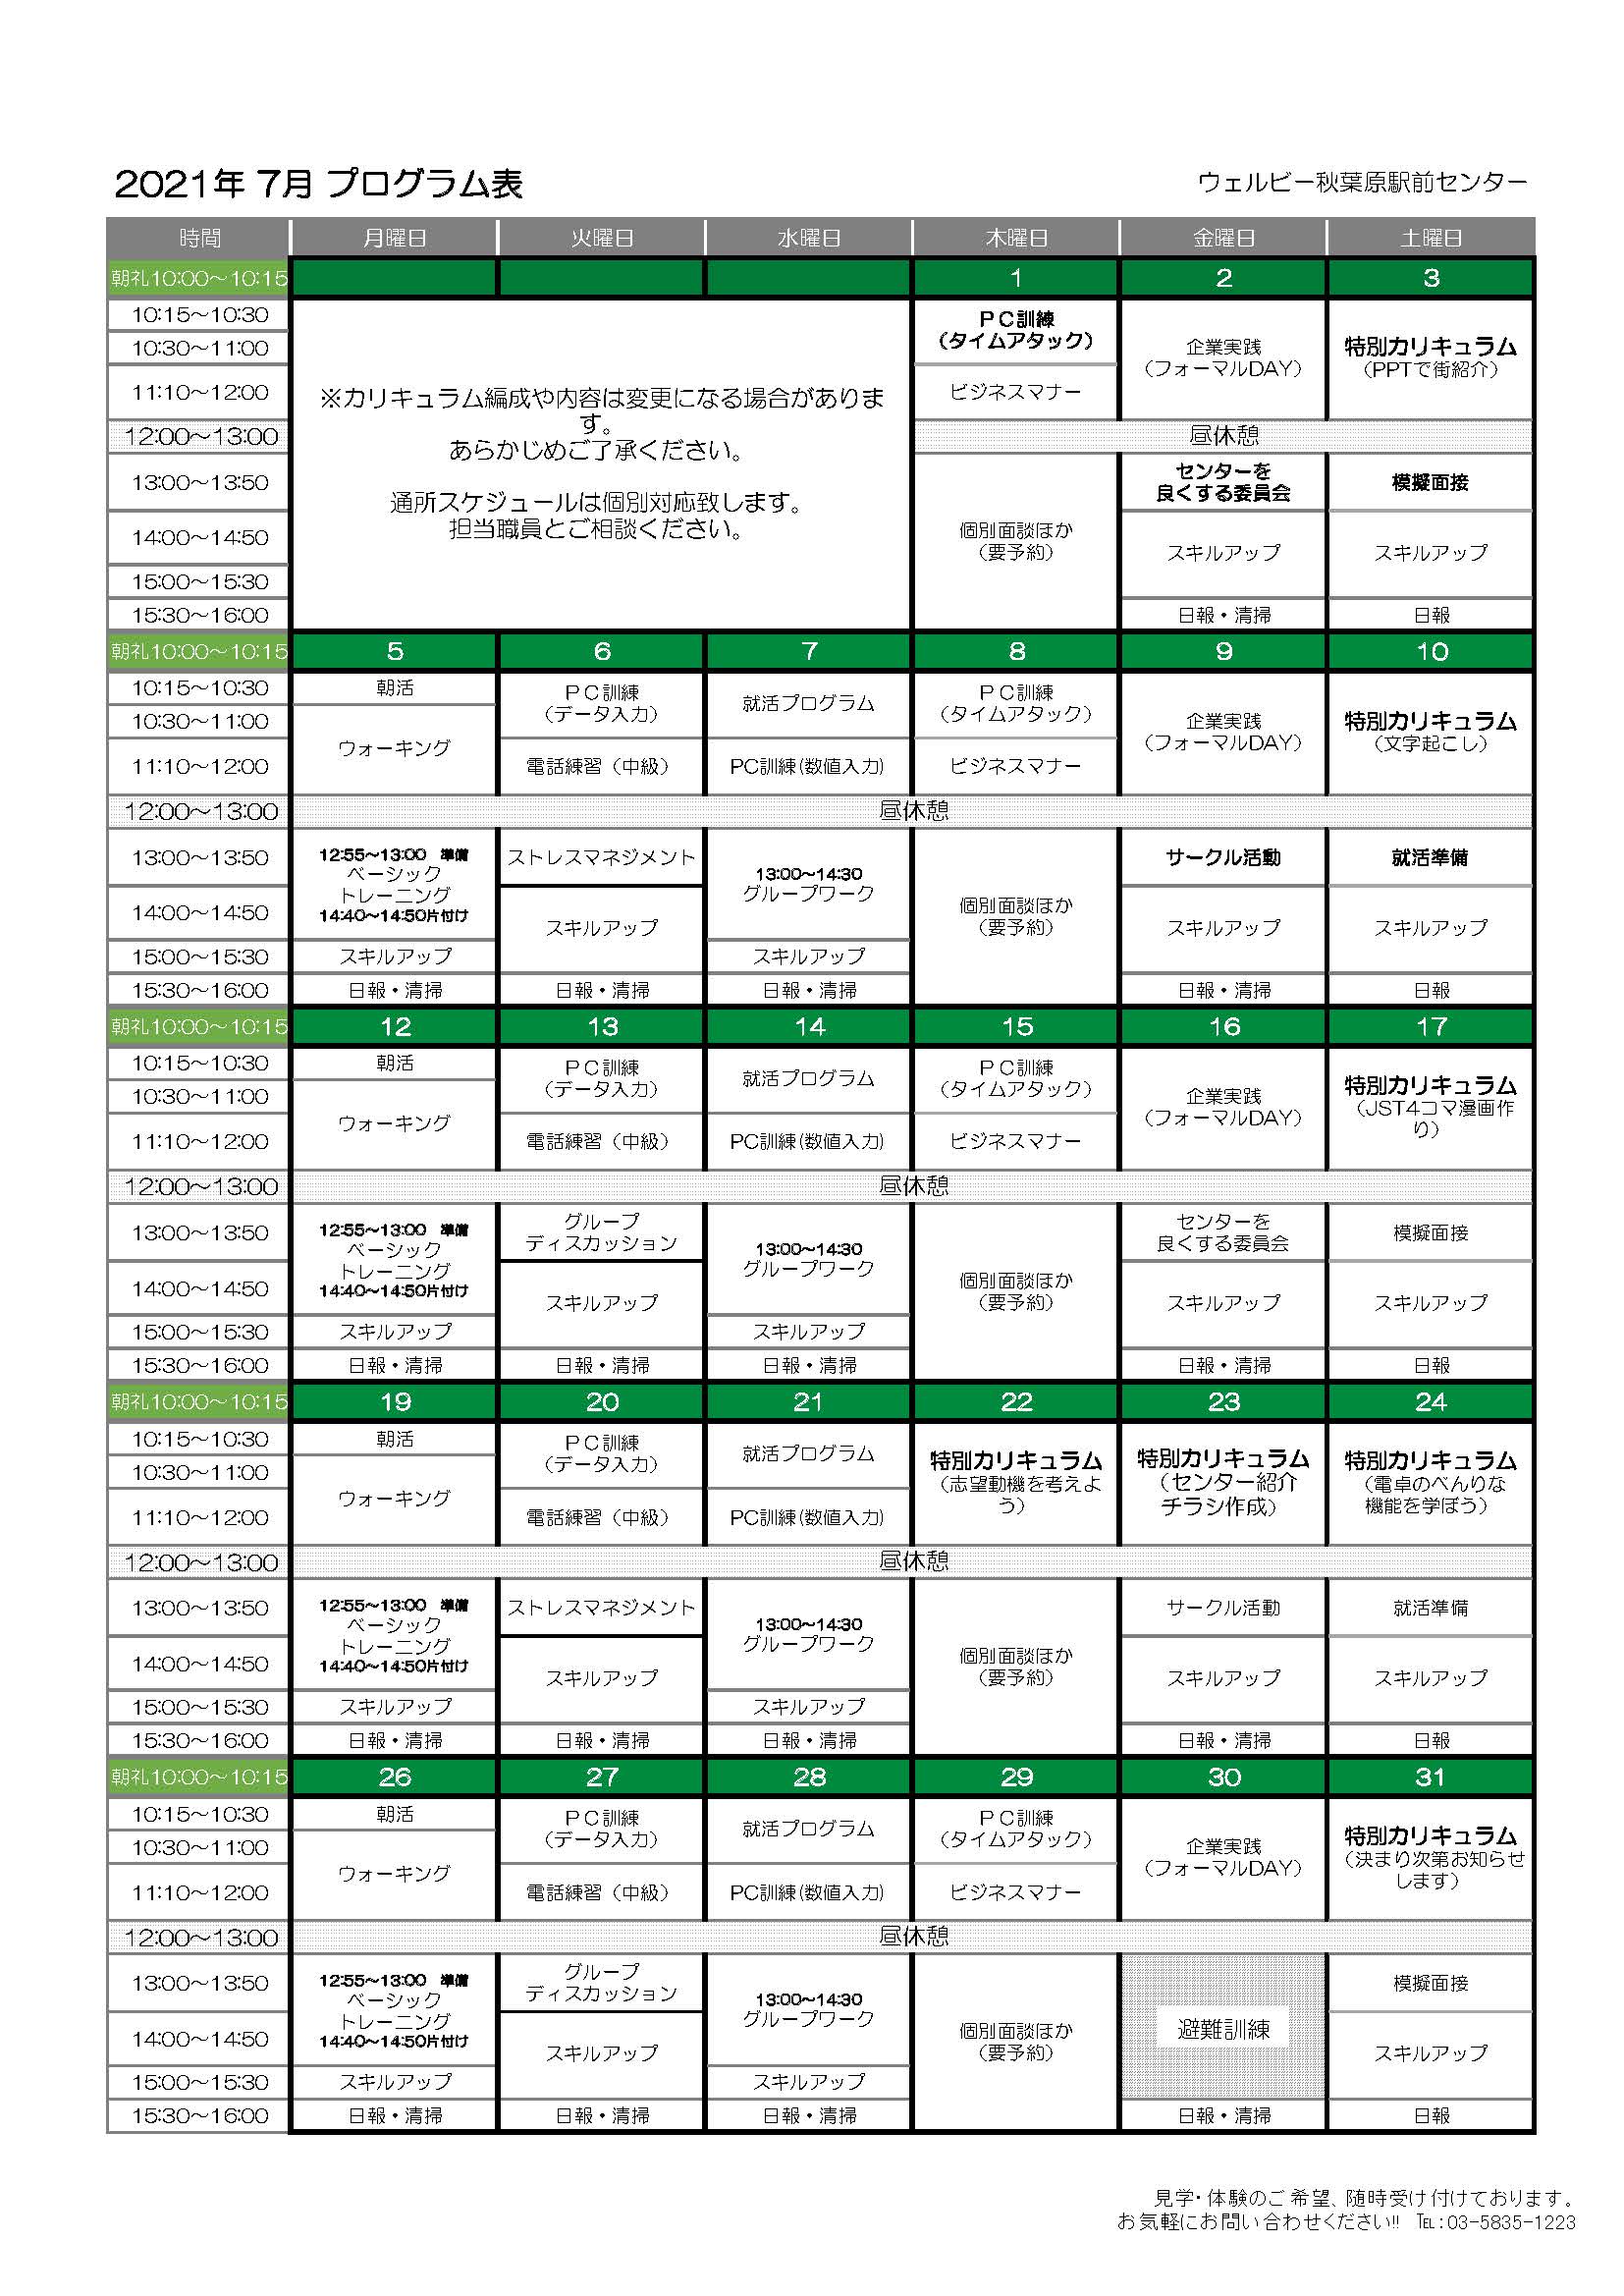 ウェルビー秋葉原駅前センター月間プログラム表(7月)